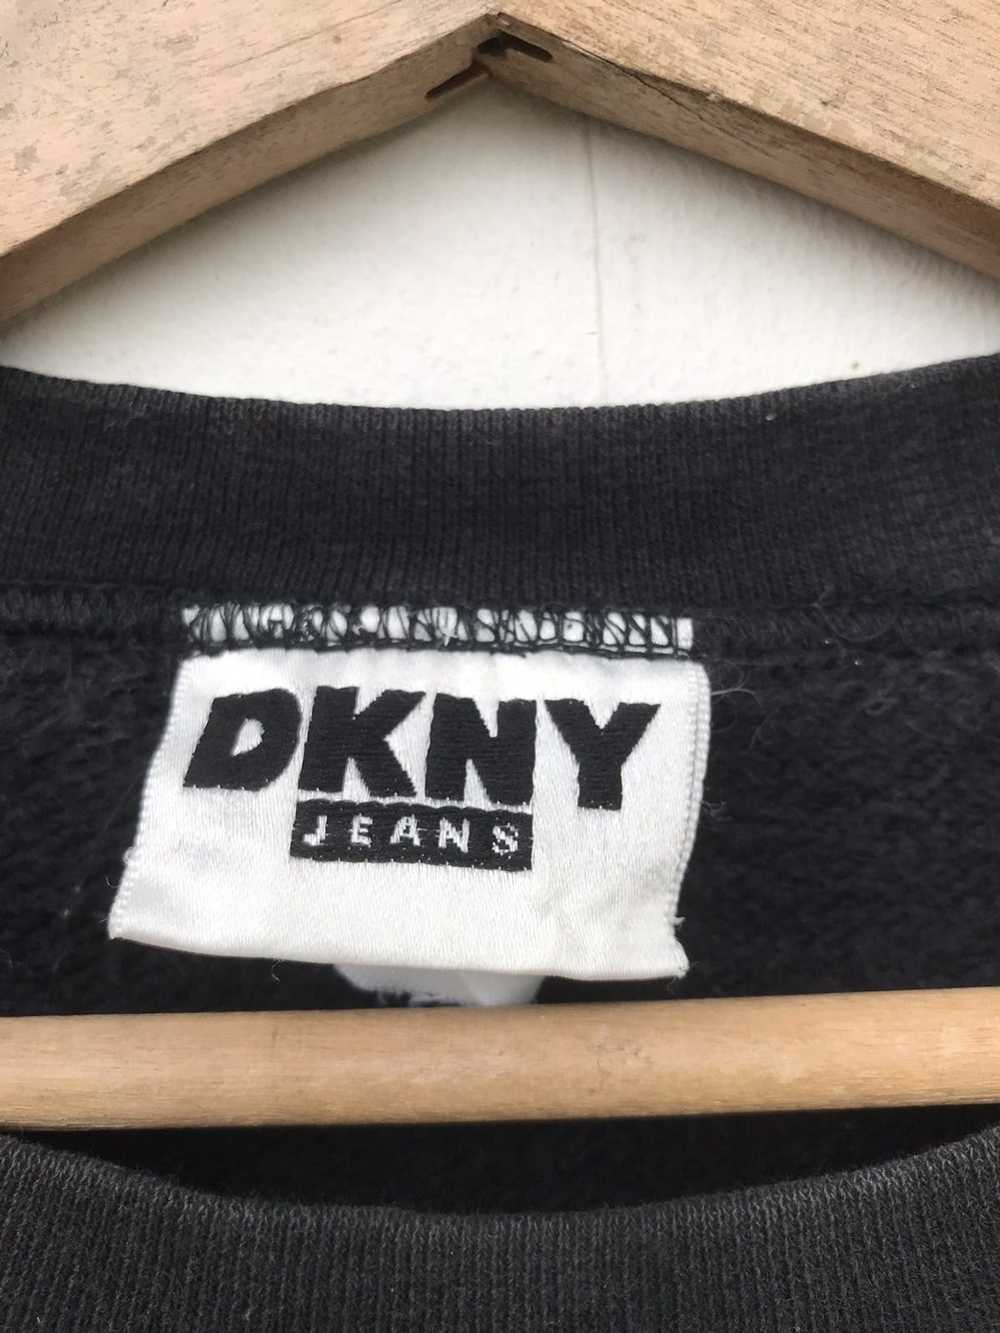 DKNY × Streetwear × Vintage Vintage DKNY Jeans Bi… - image 4